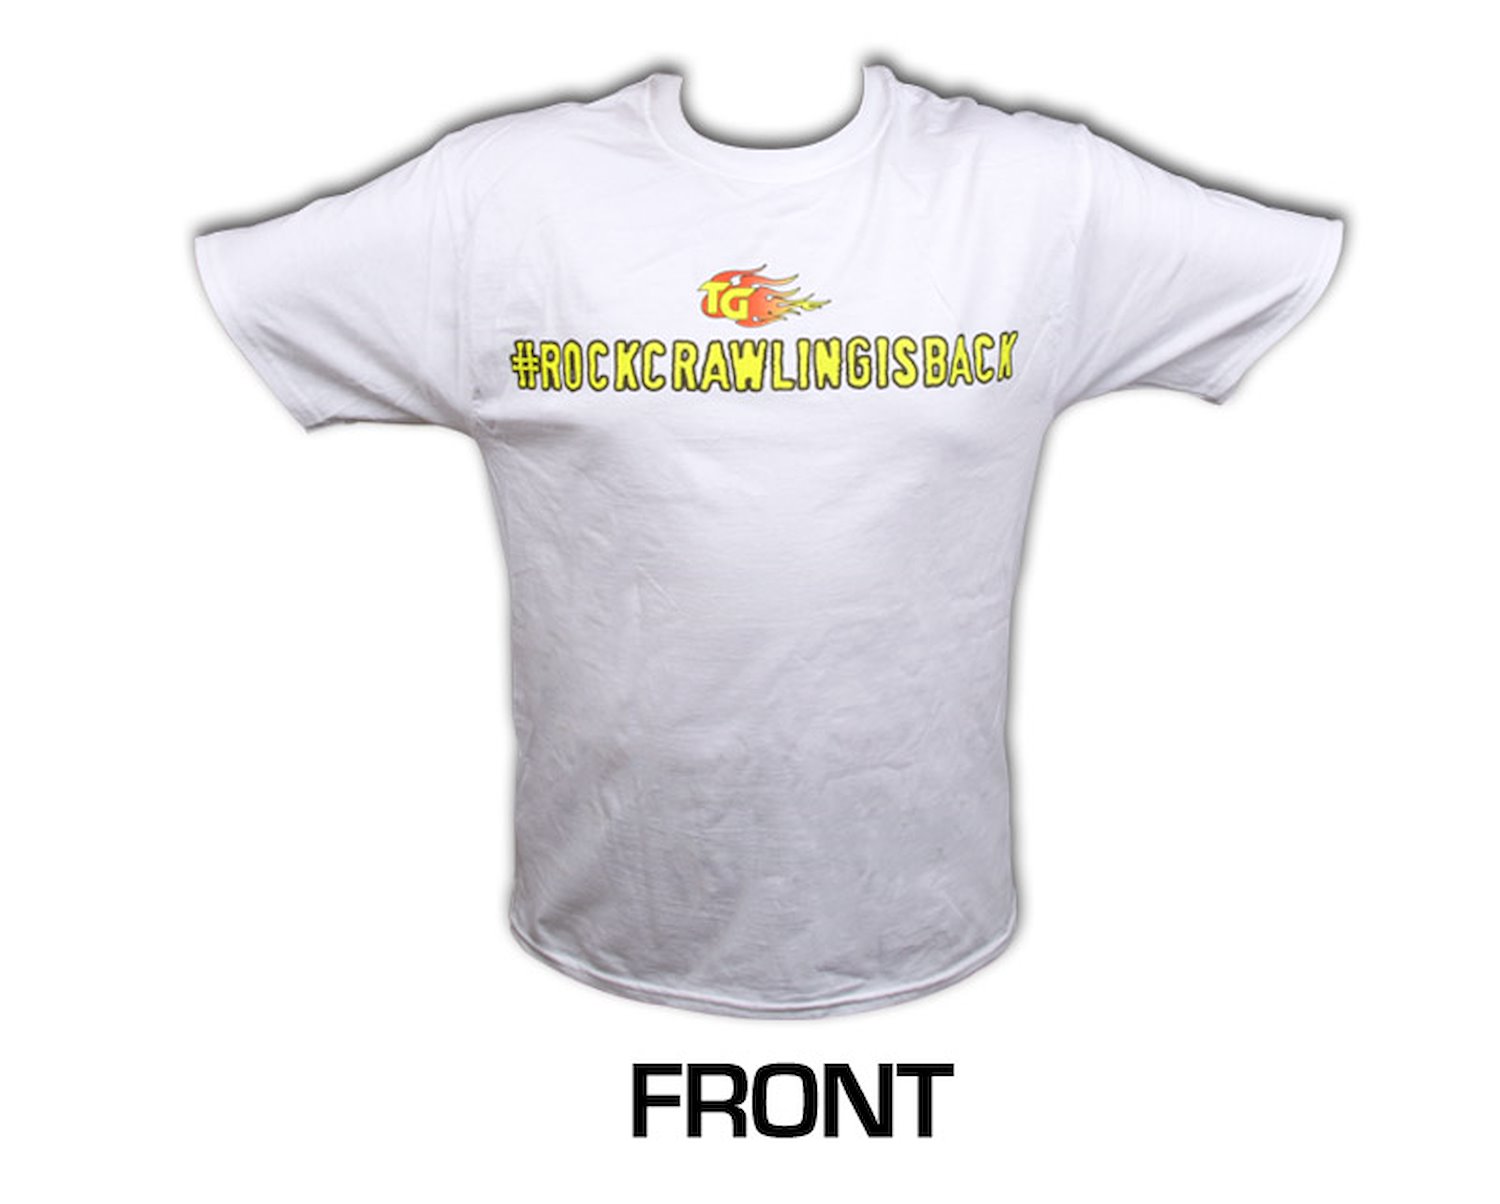 Short Sleeved White Shirt #rockcrawlingisback X-Large